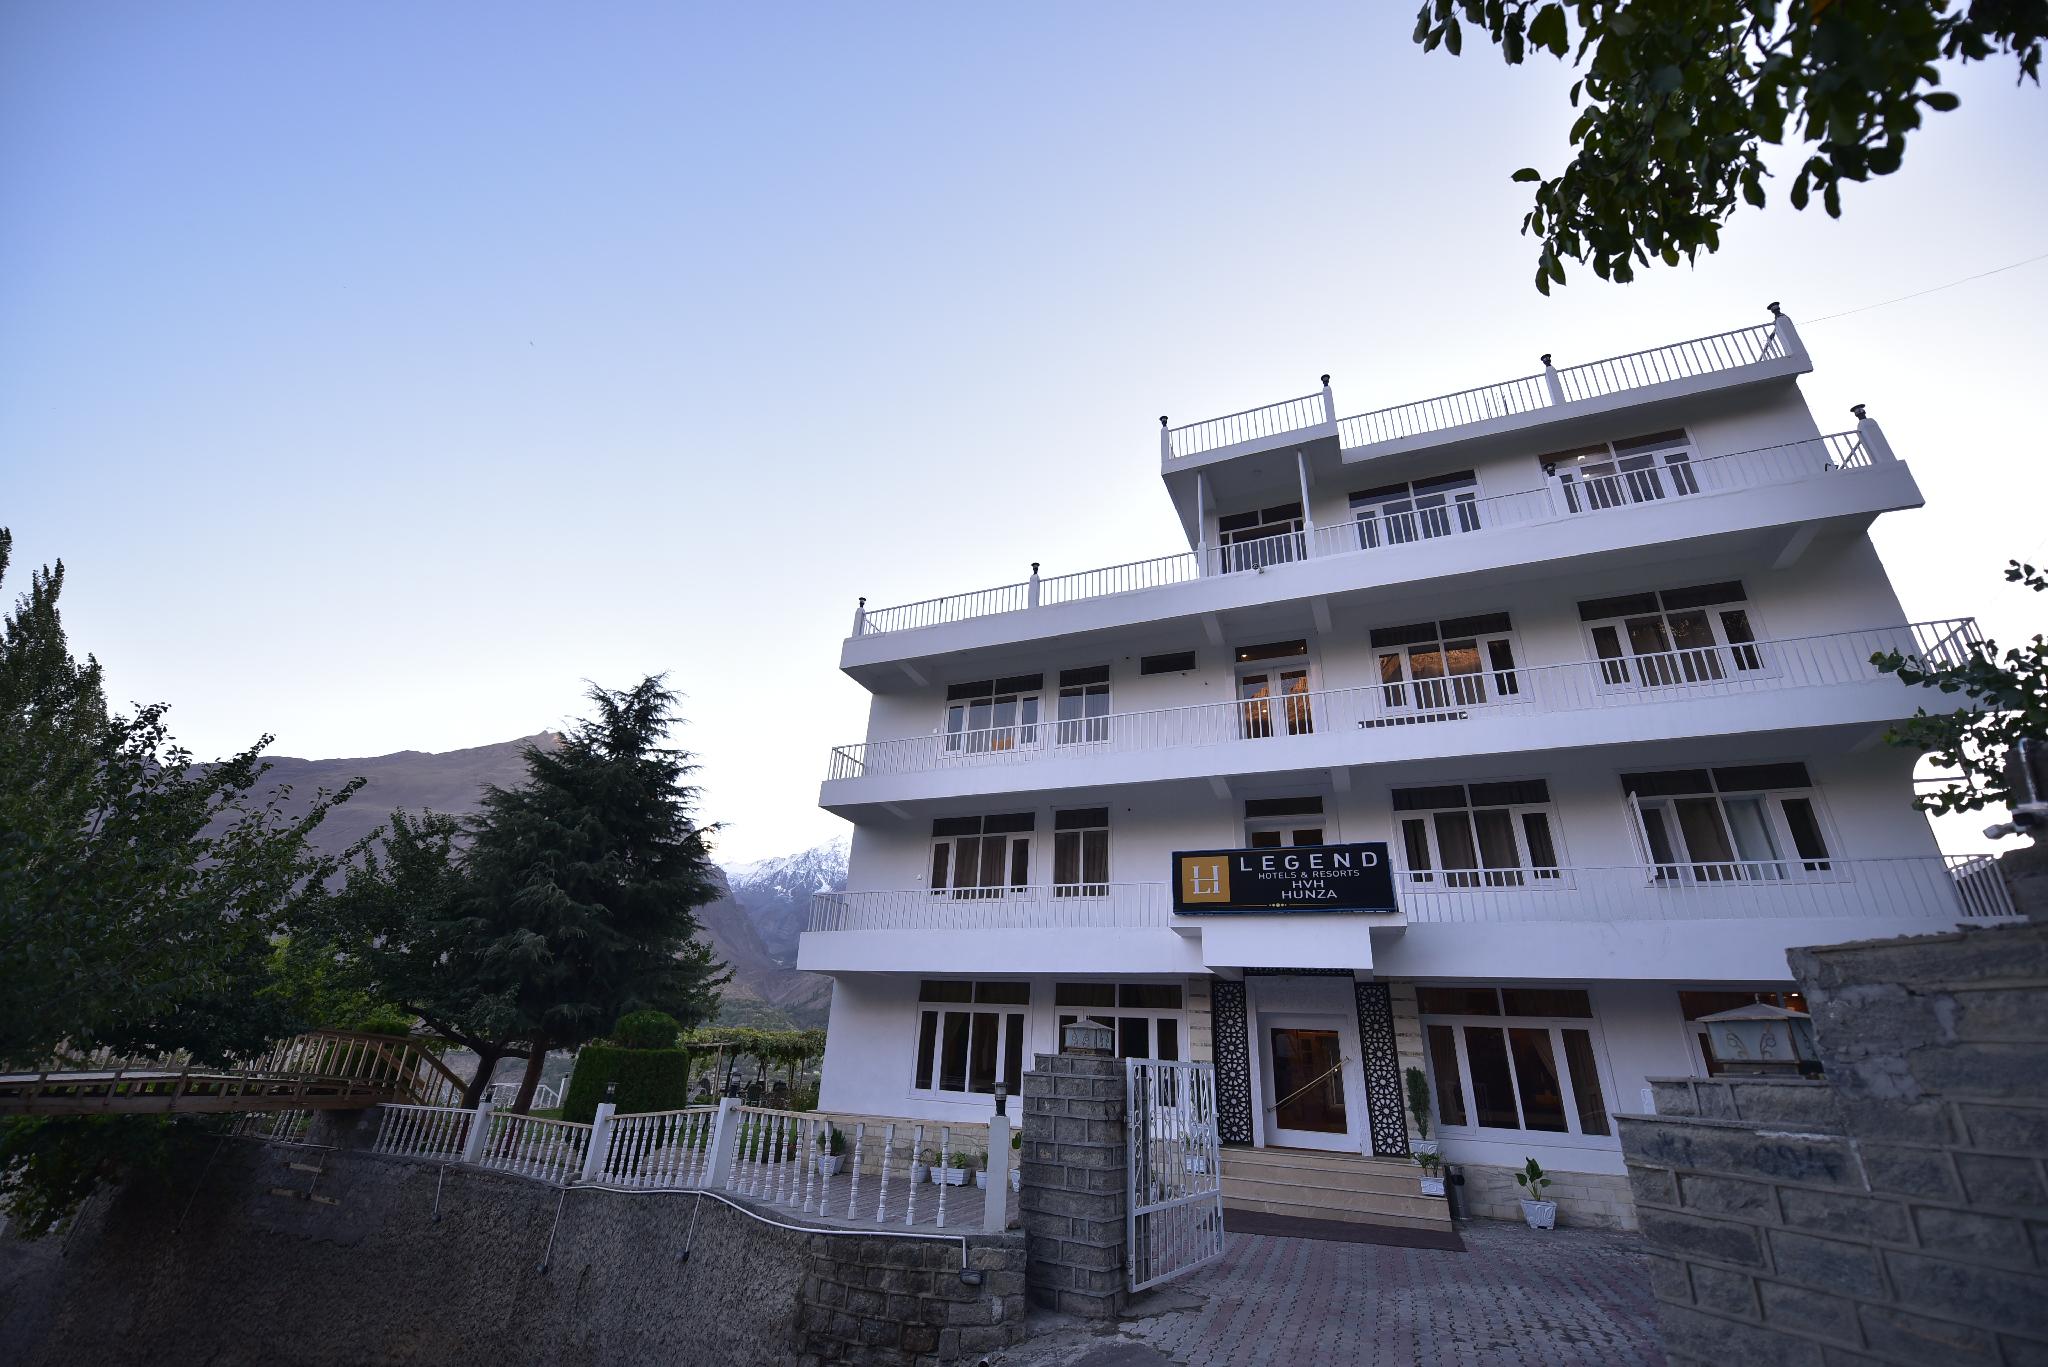 Book hotel in Hunza